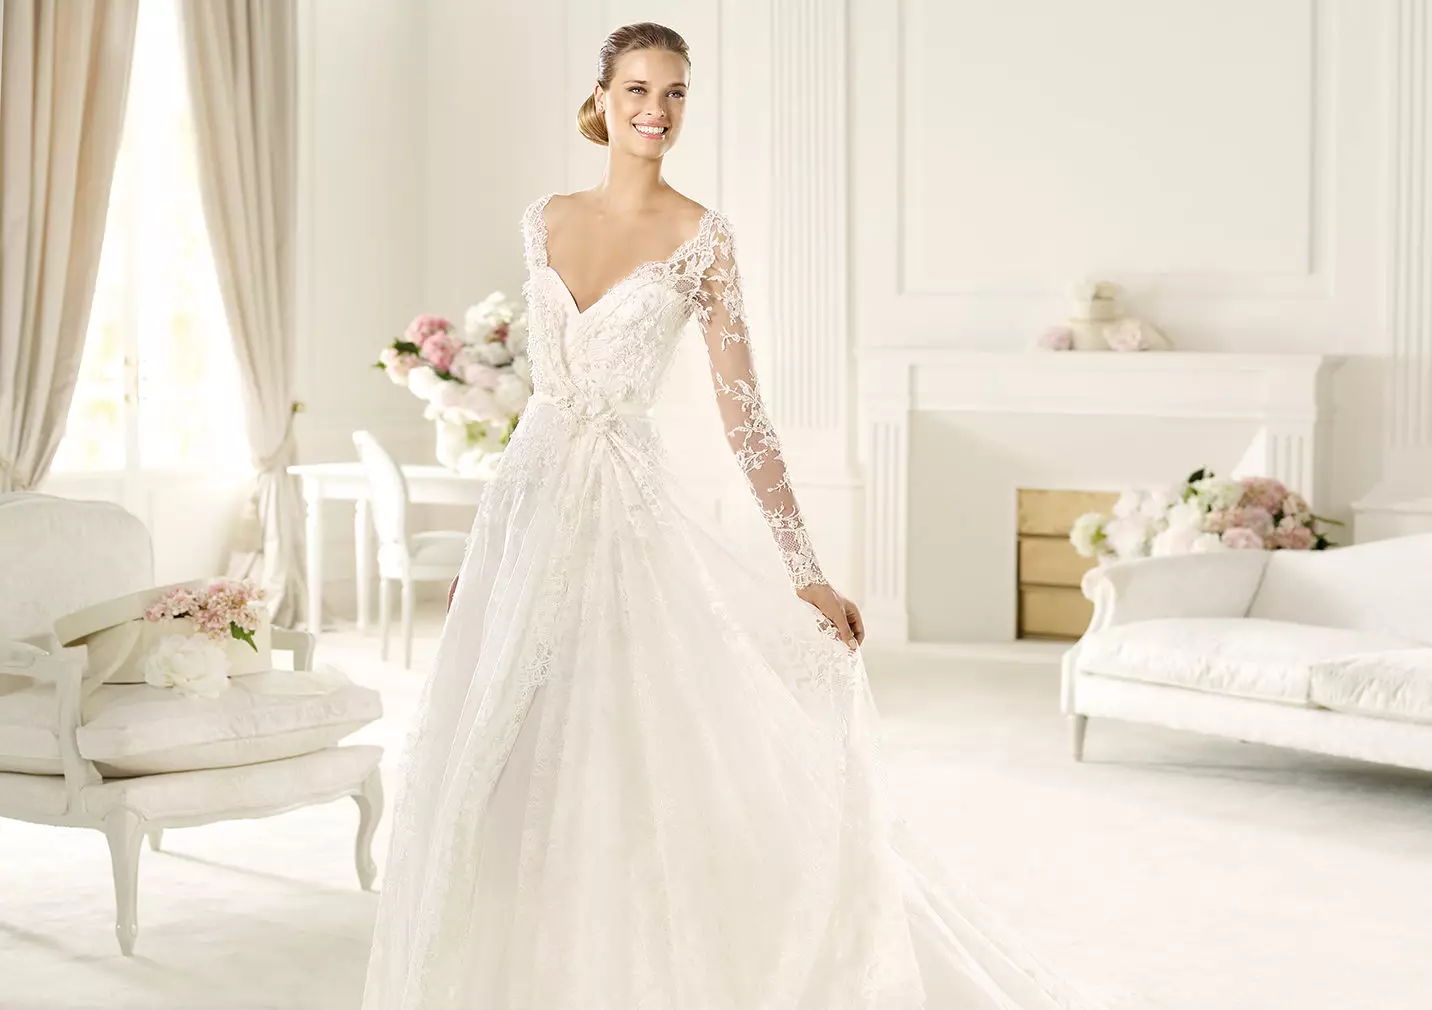 I-Wedding dress lace kusuka eSpruce Saab